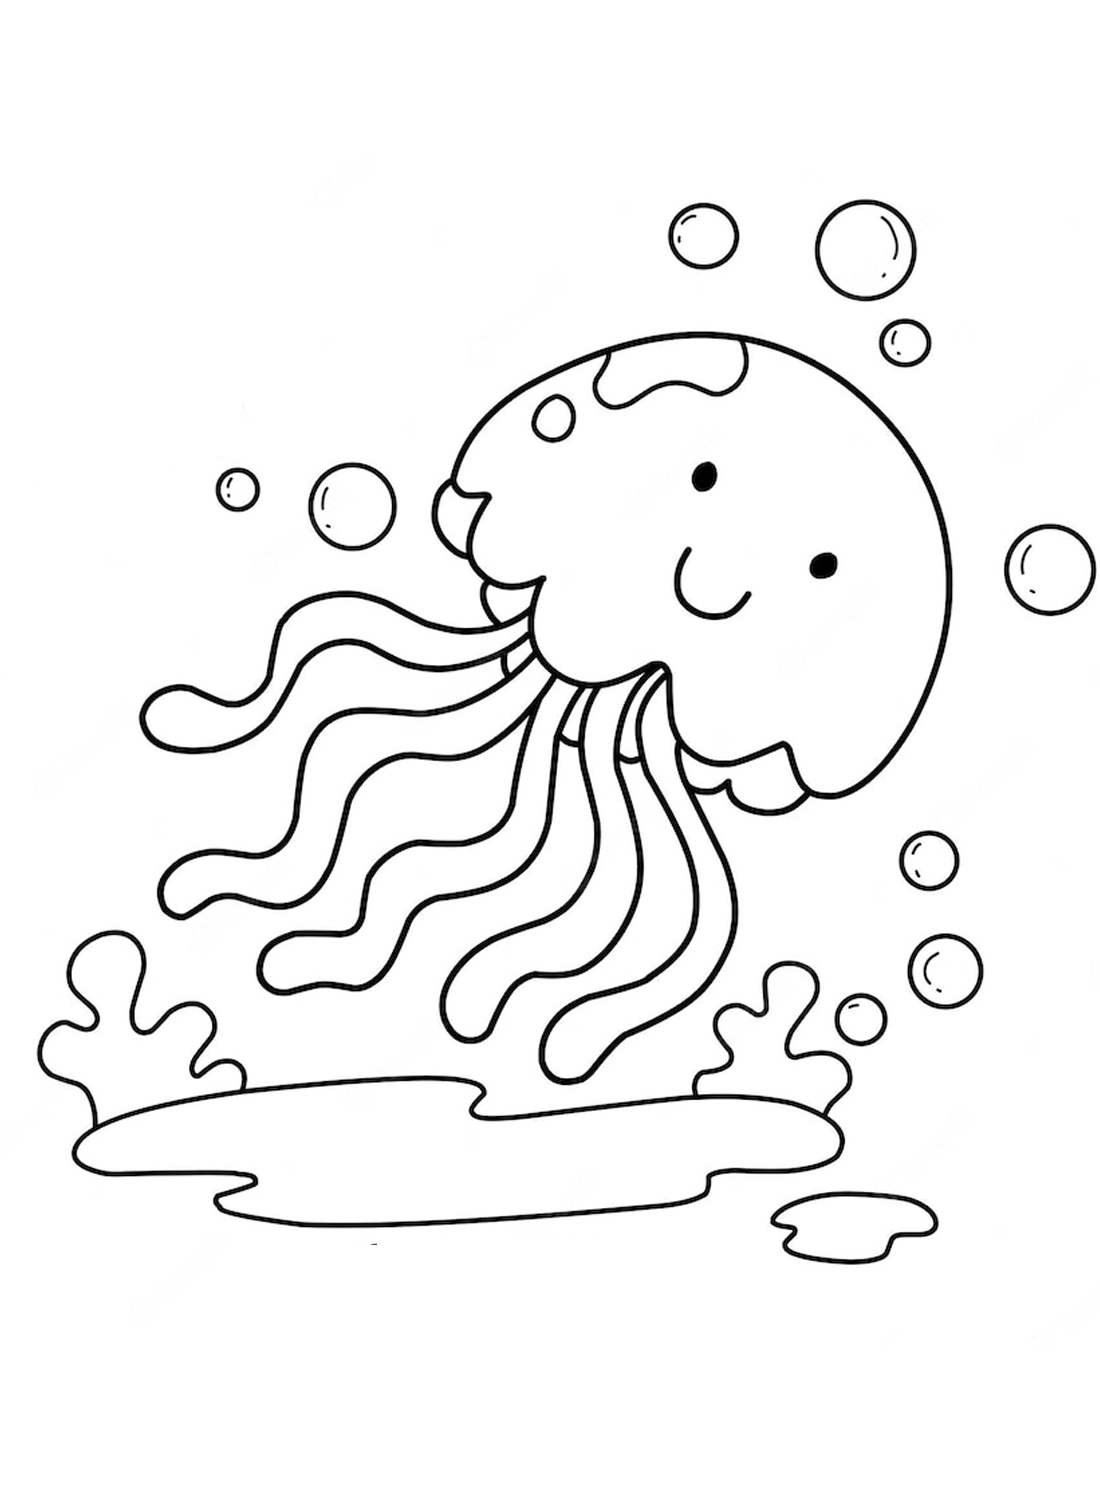 La pagina da colorare delle meduse